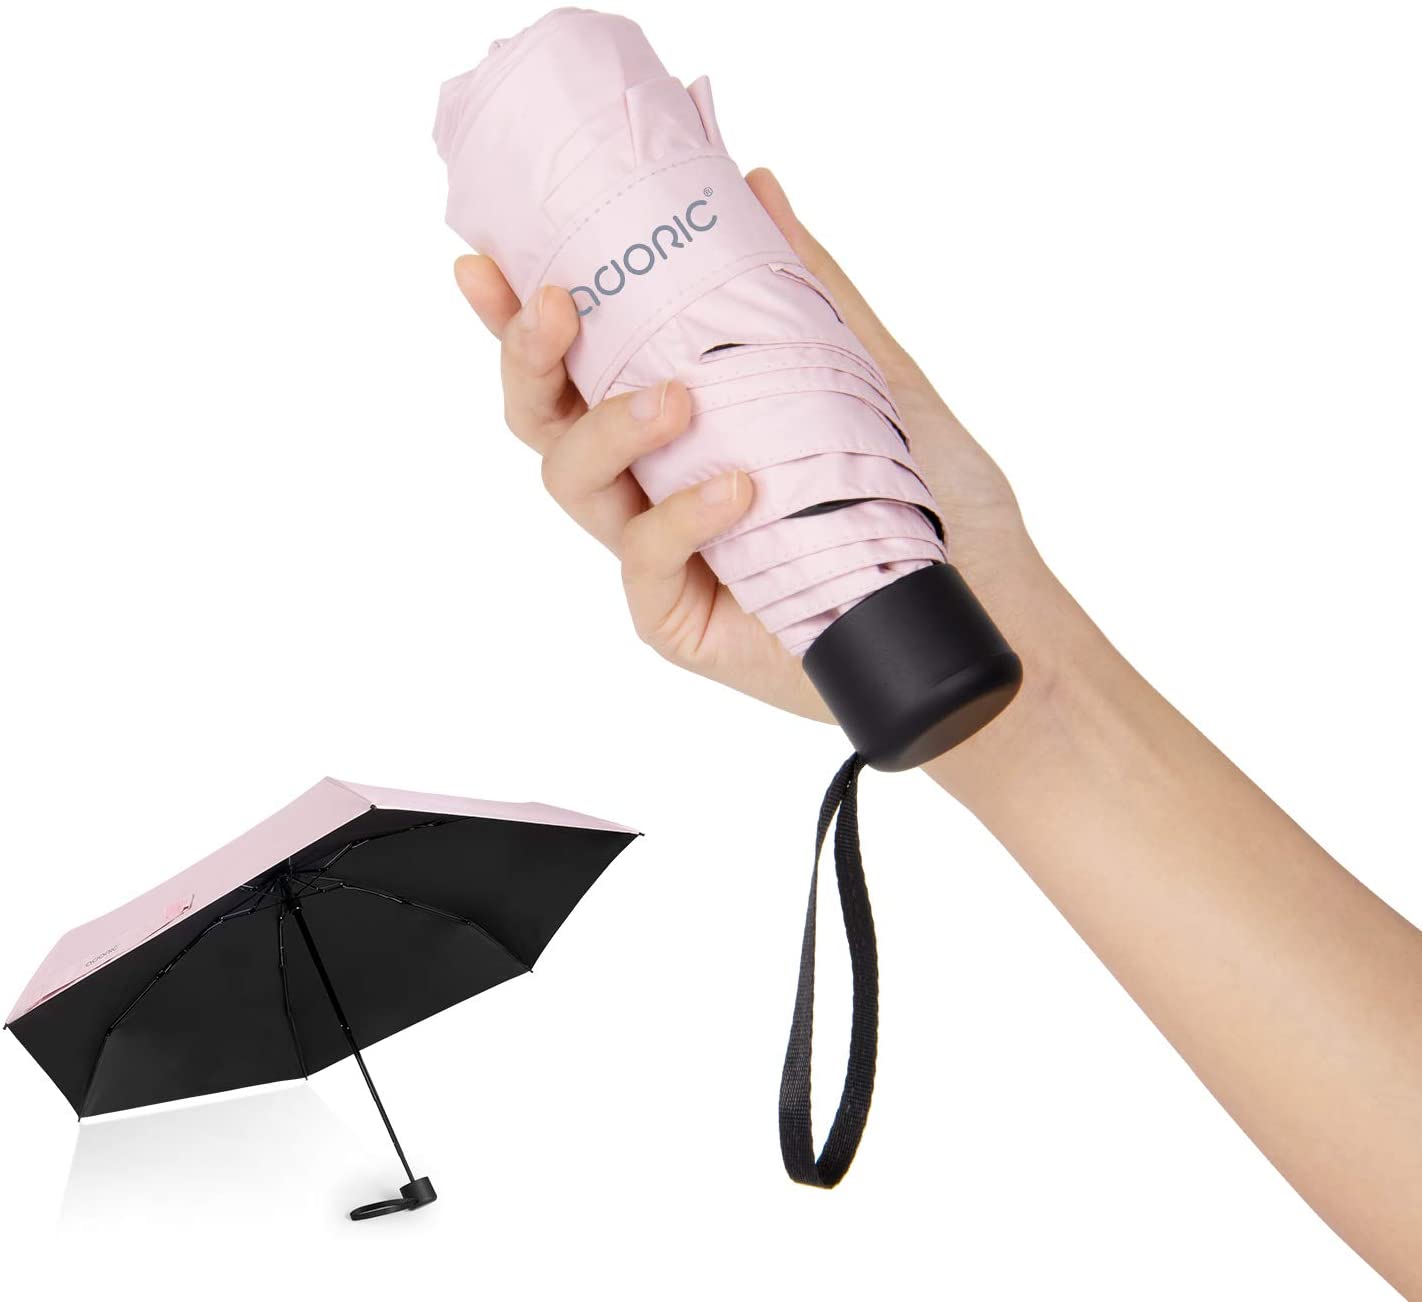 Adoric(アドリック) 晴雨兼用 折りたたみ傘